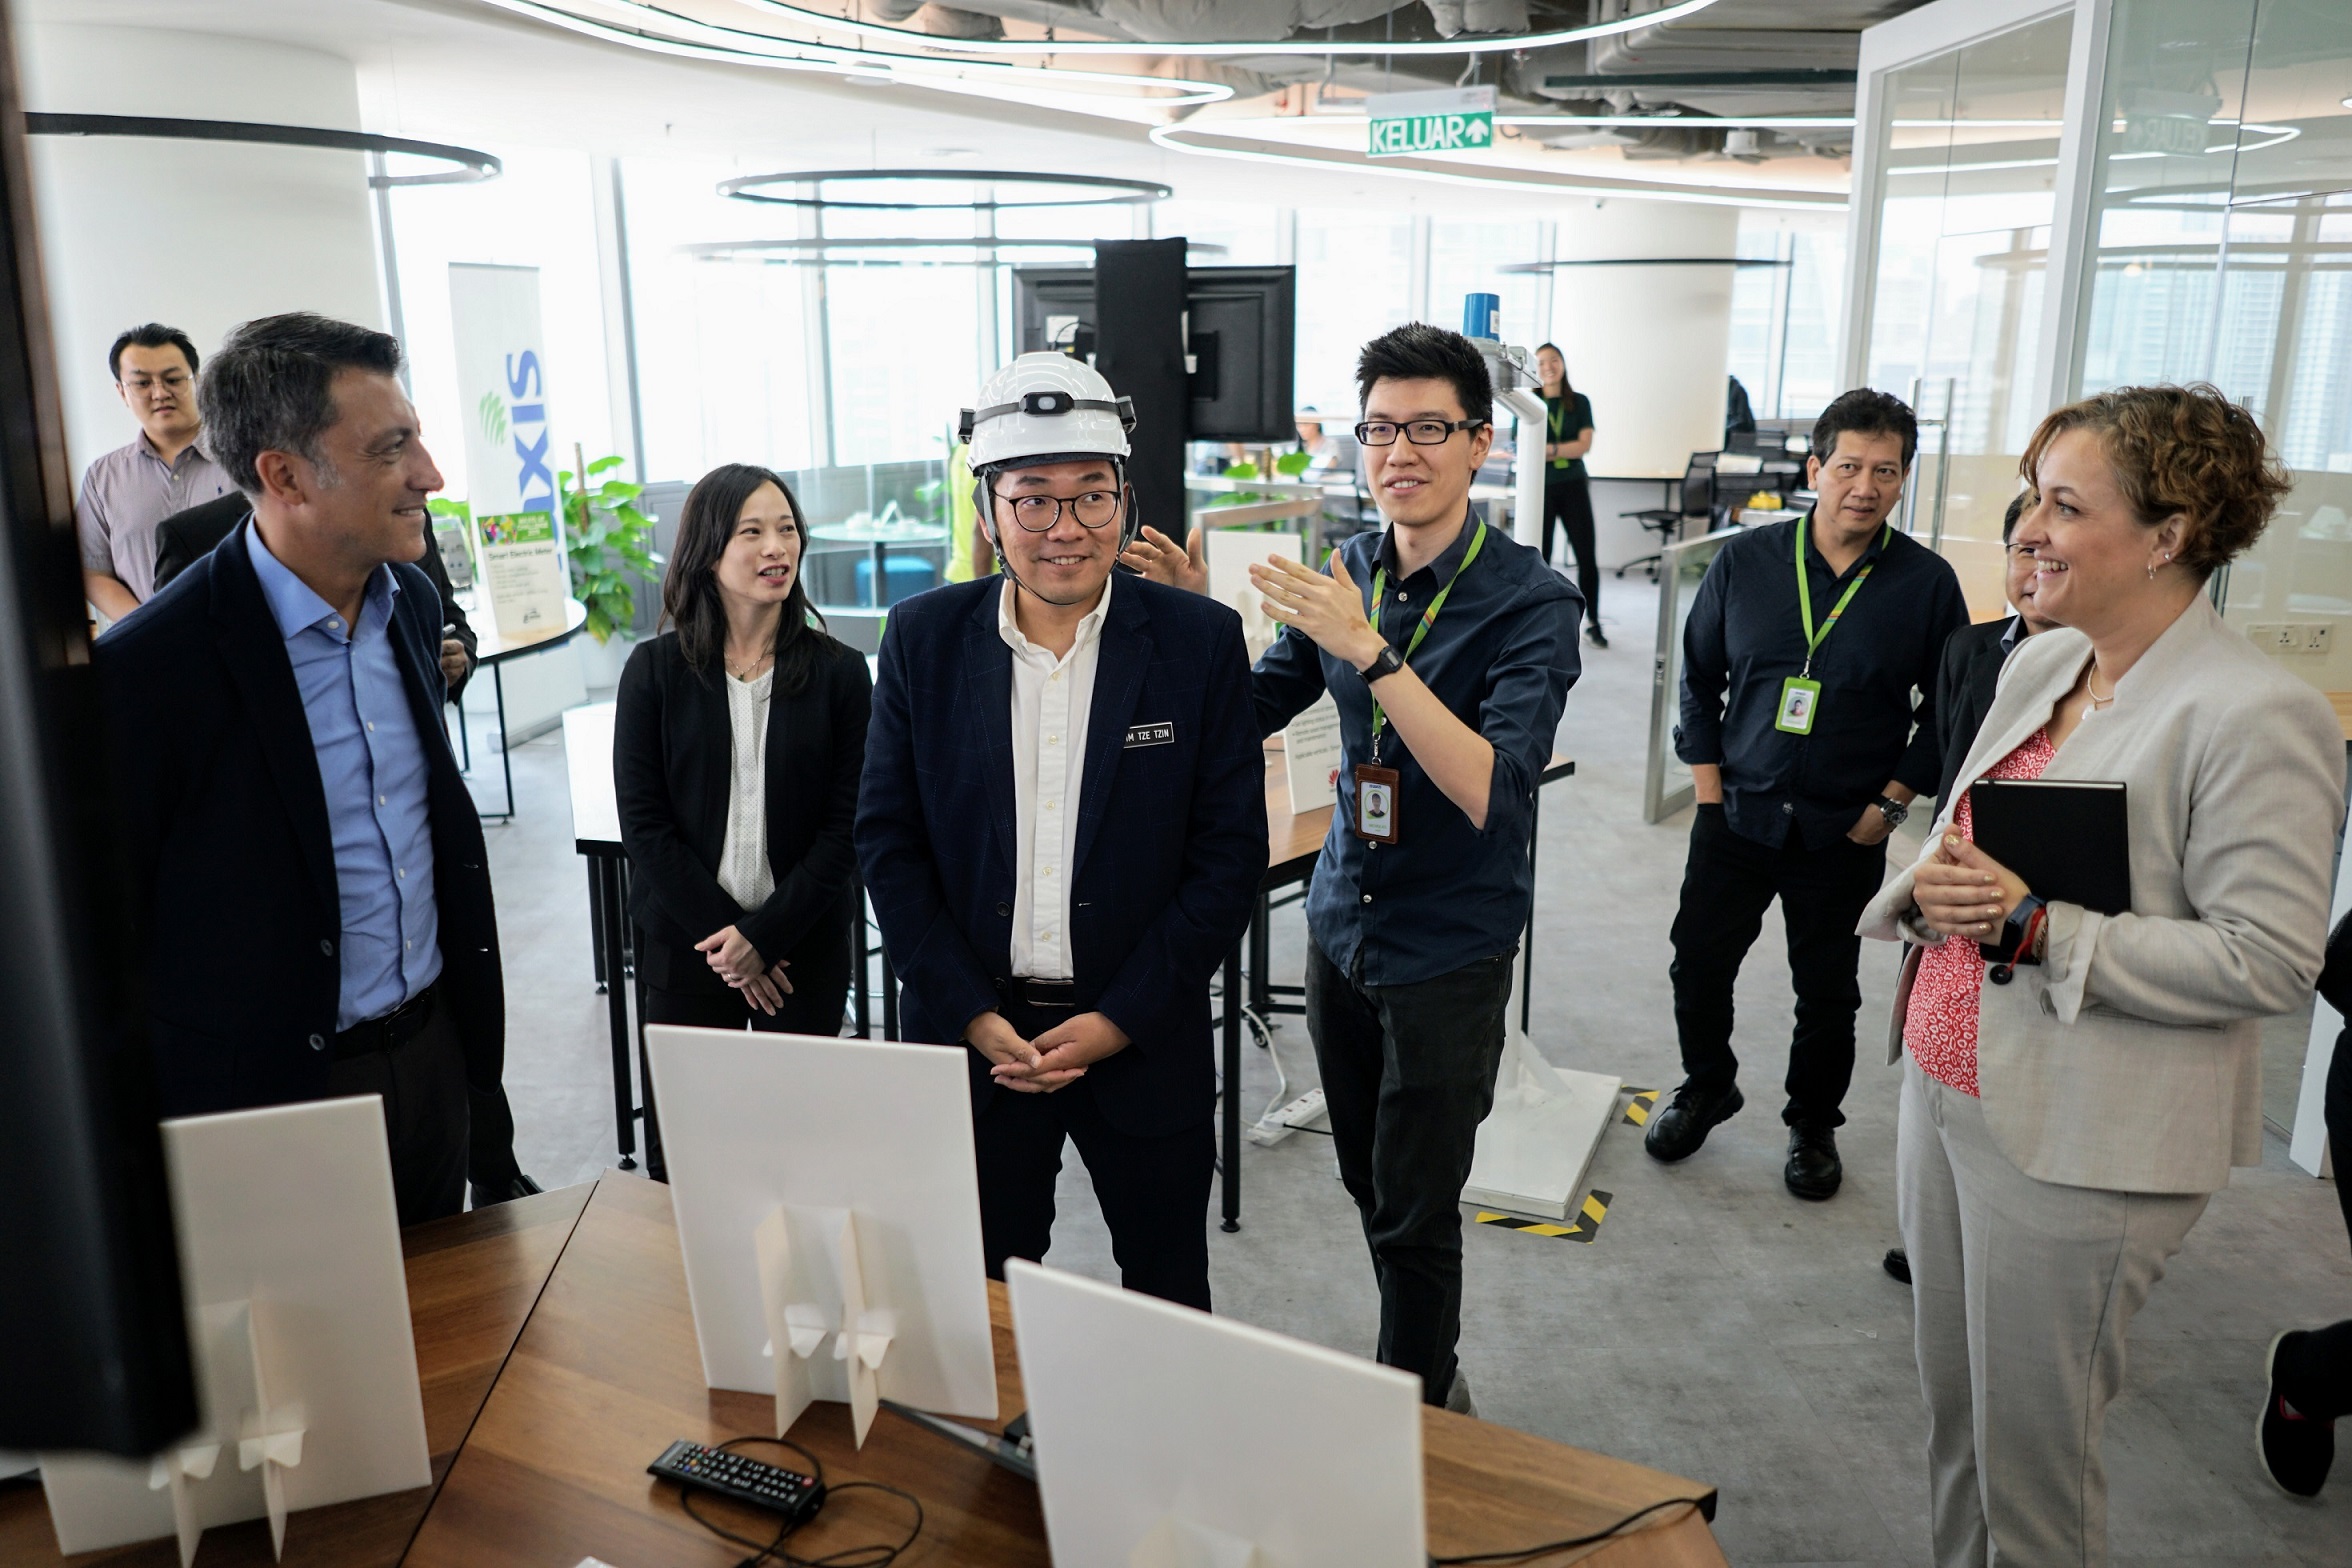 Maxis IoT Challenge memberi inspirasi kepada rakyat Malaysia yang inovatif dan berpandangan jauh